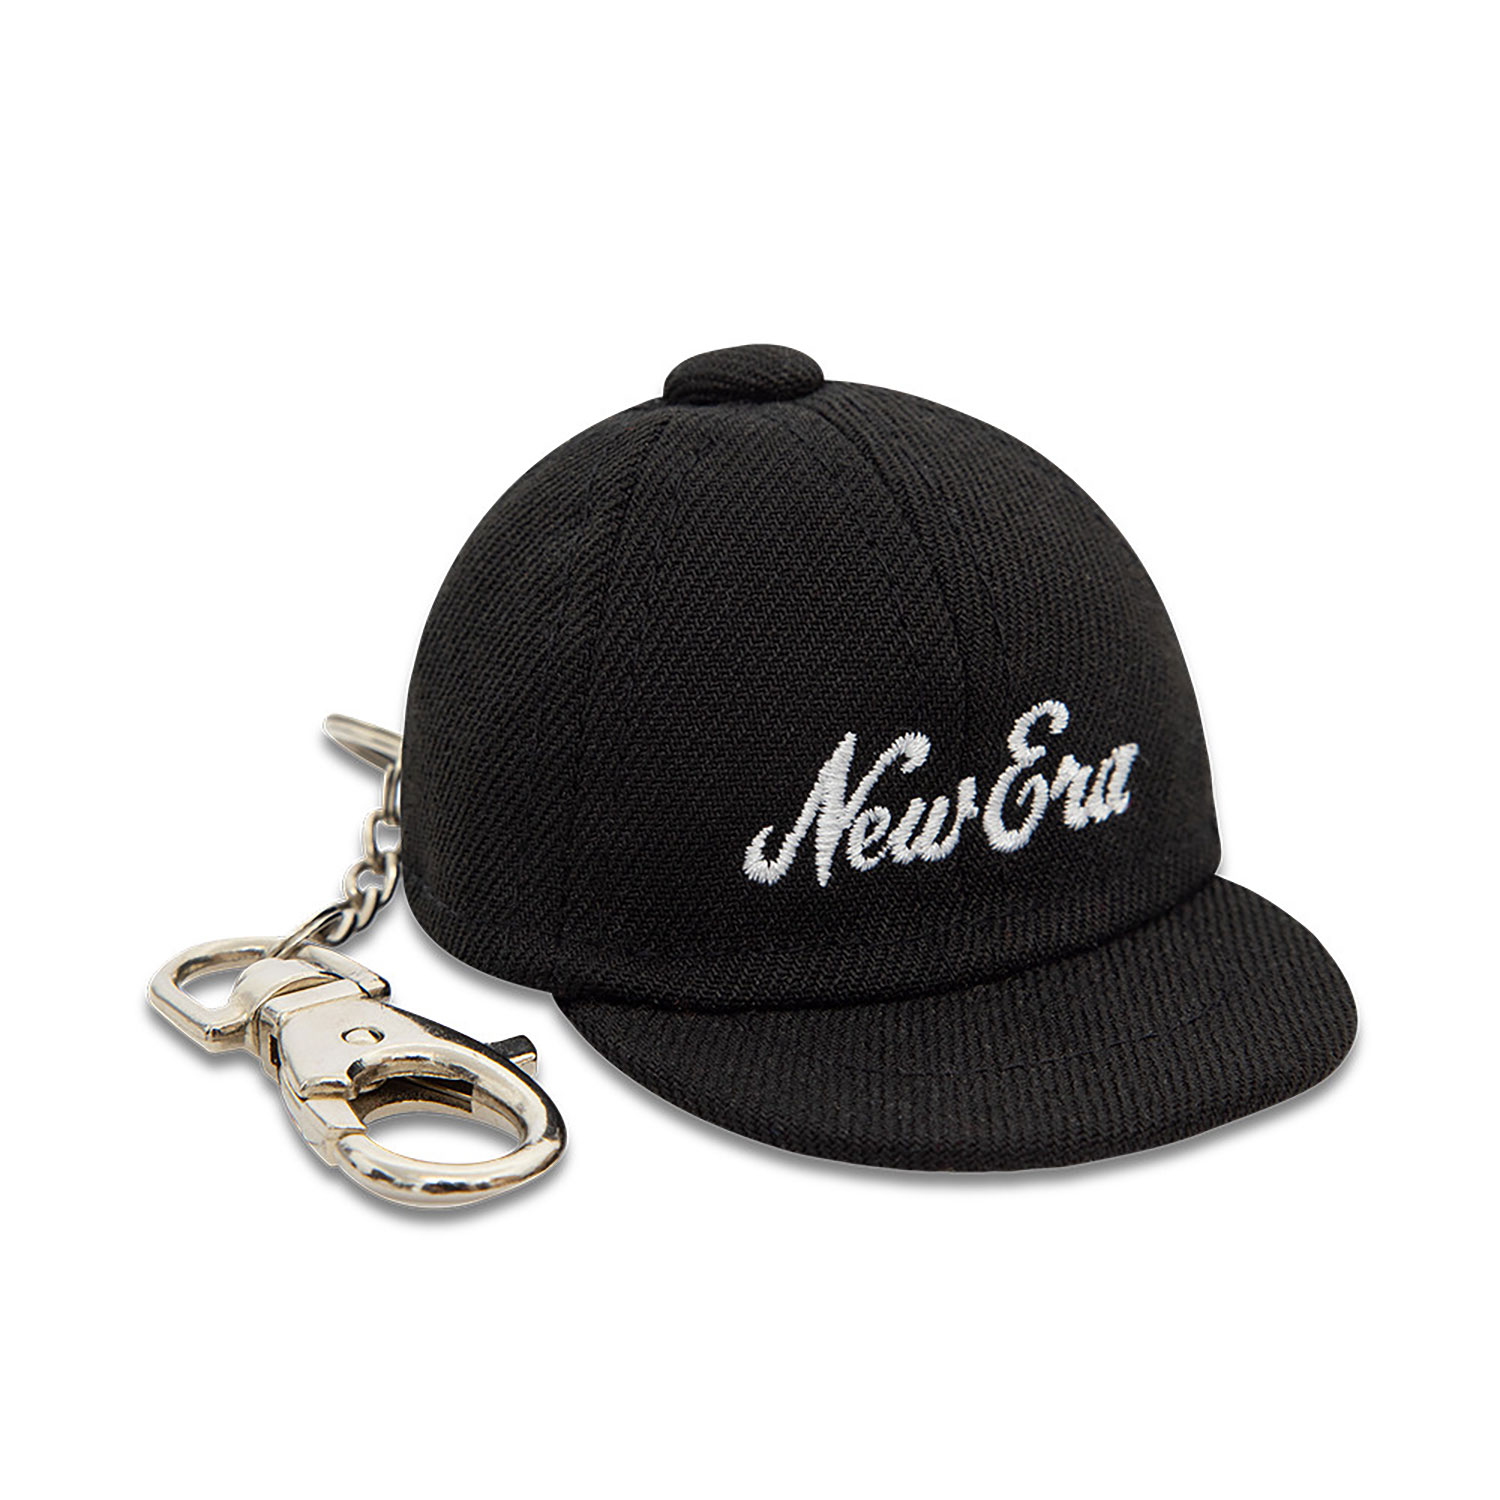 New Era Mini Cap Black Key Chain